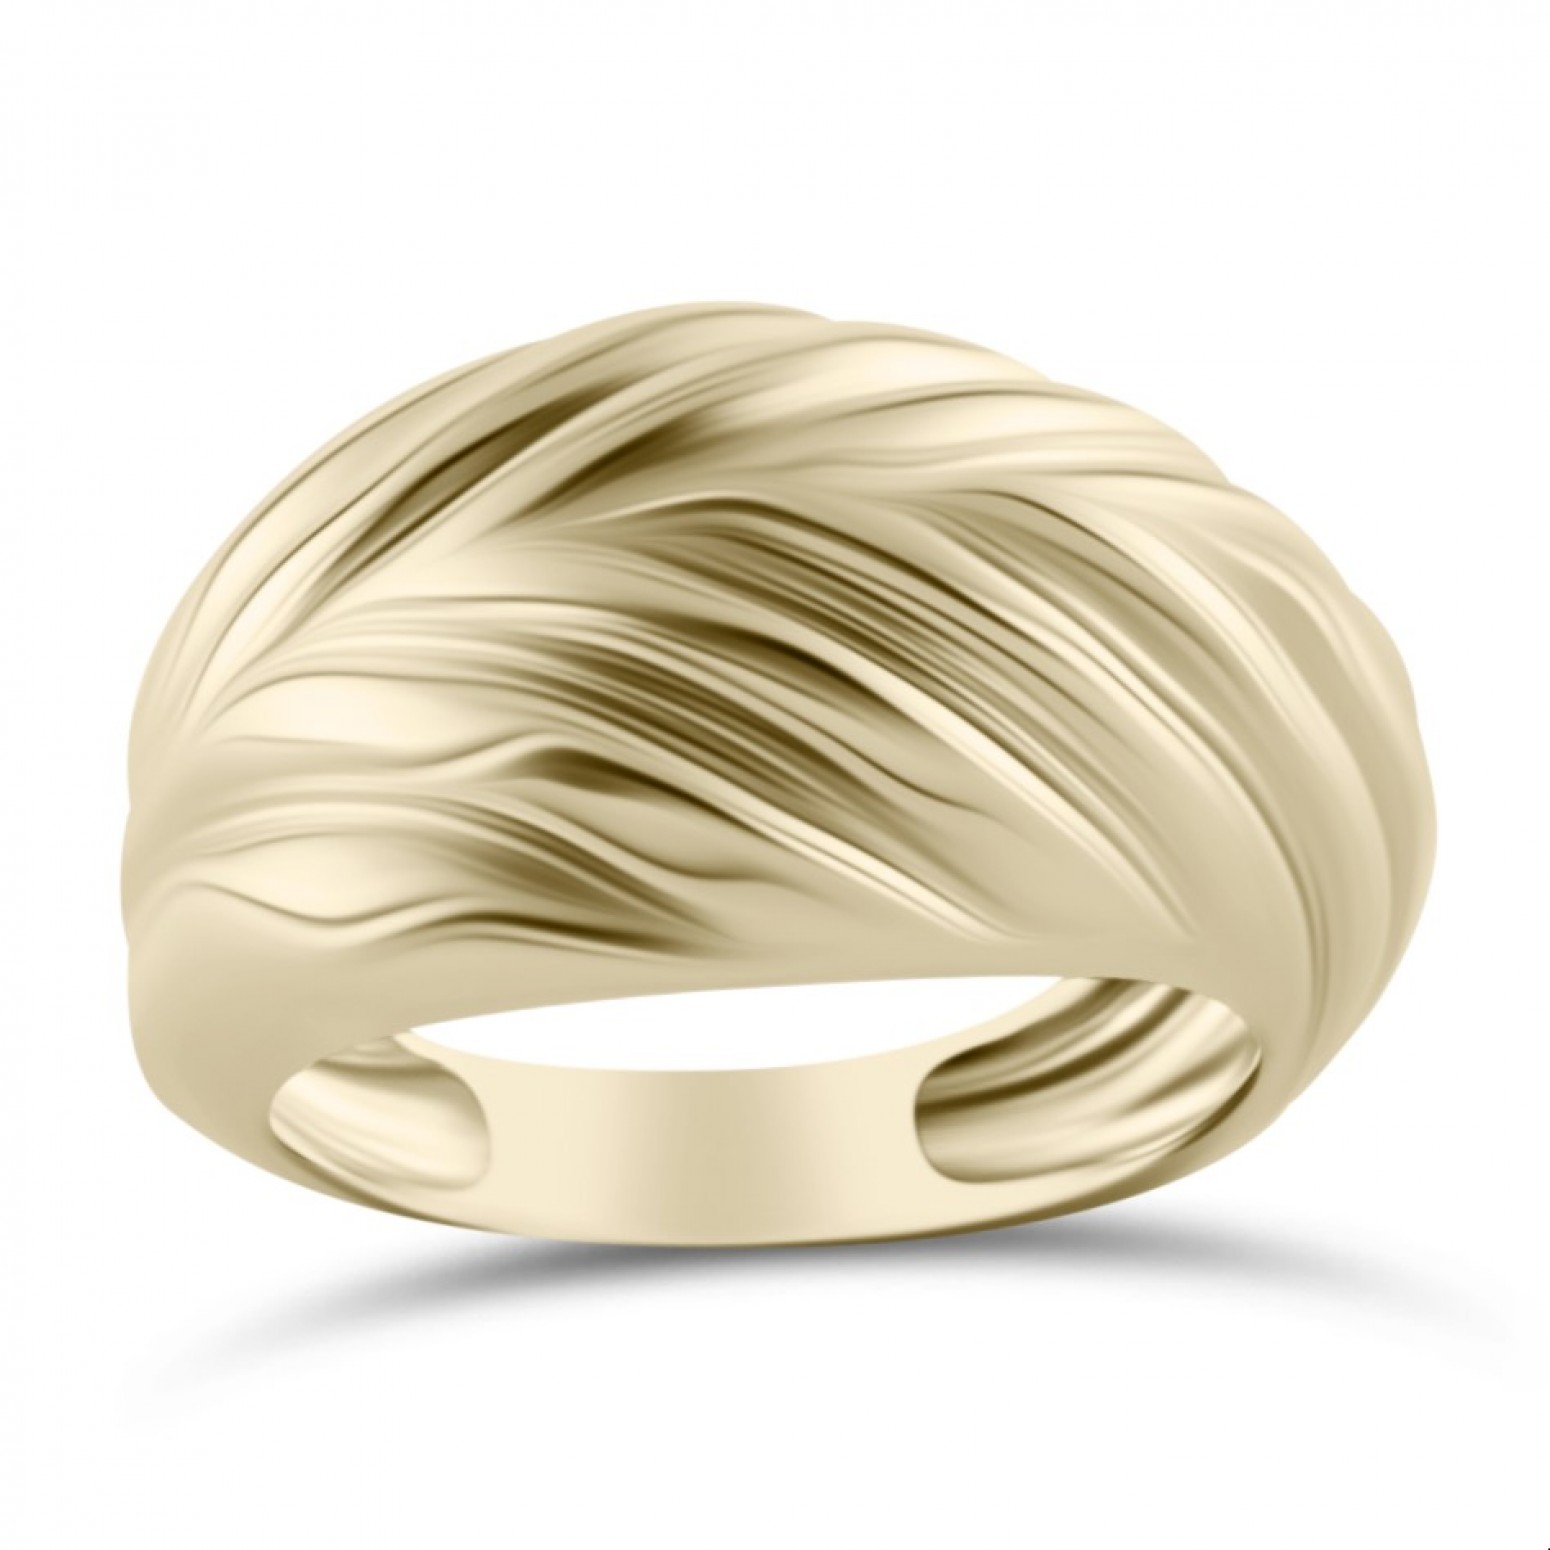 Δαχτυλίδι Κ14 χρυσό, da4249 ΔΑΧΤΥΛΙΔΙΑ Κοσμηματα - chrilia.gr